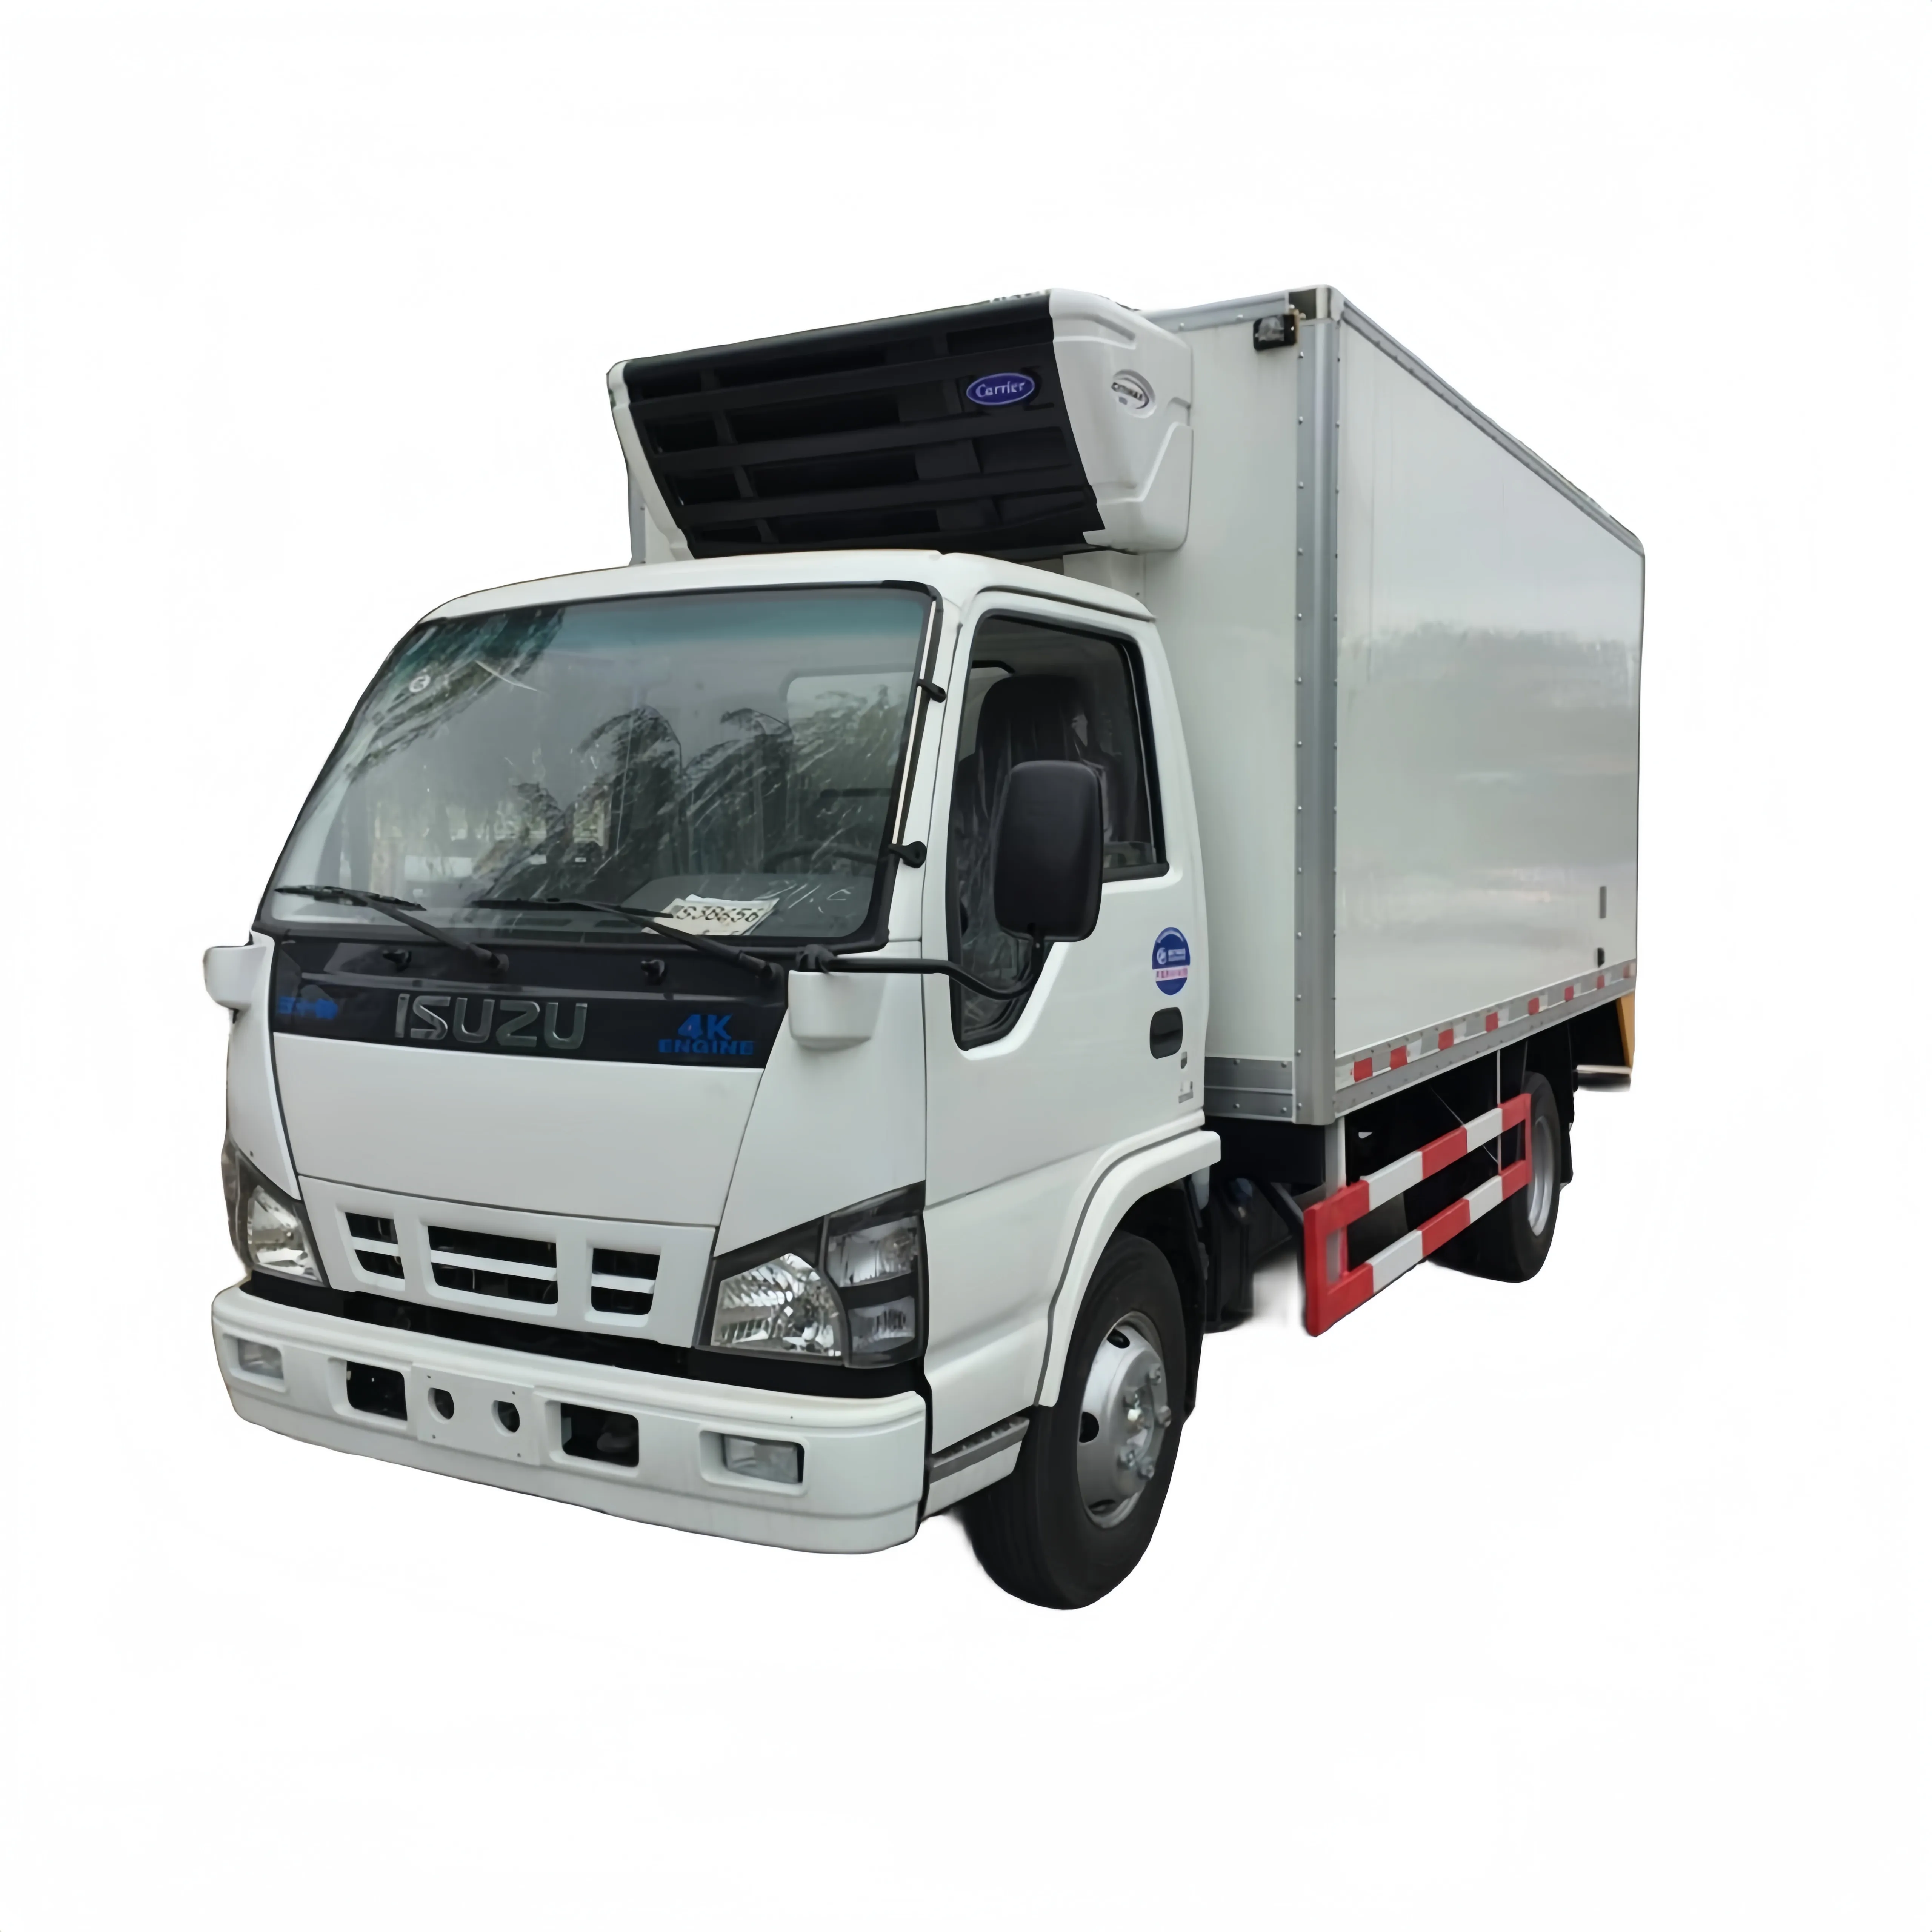 Satılık yeni ve kullanılmış ISUZU 600P soğutma bölmeli kamyon Mini soğutmalı kamyon